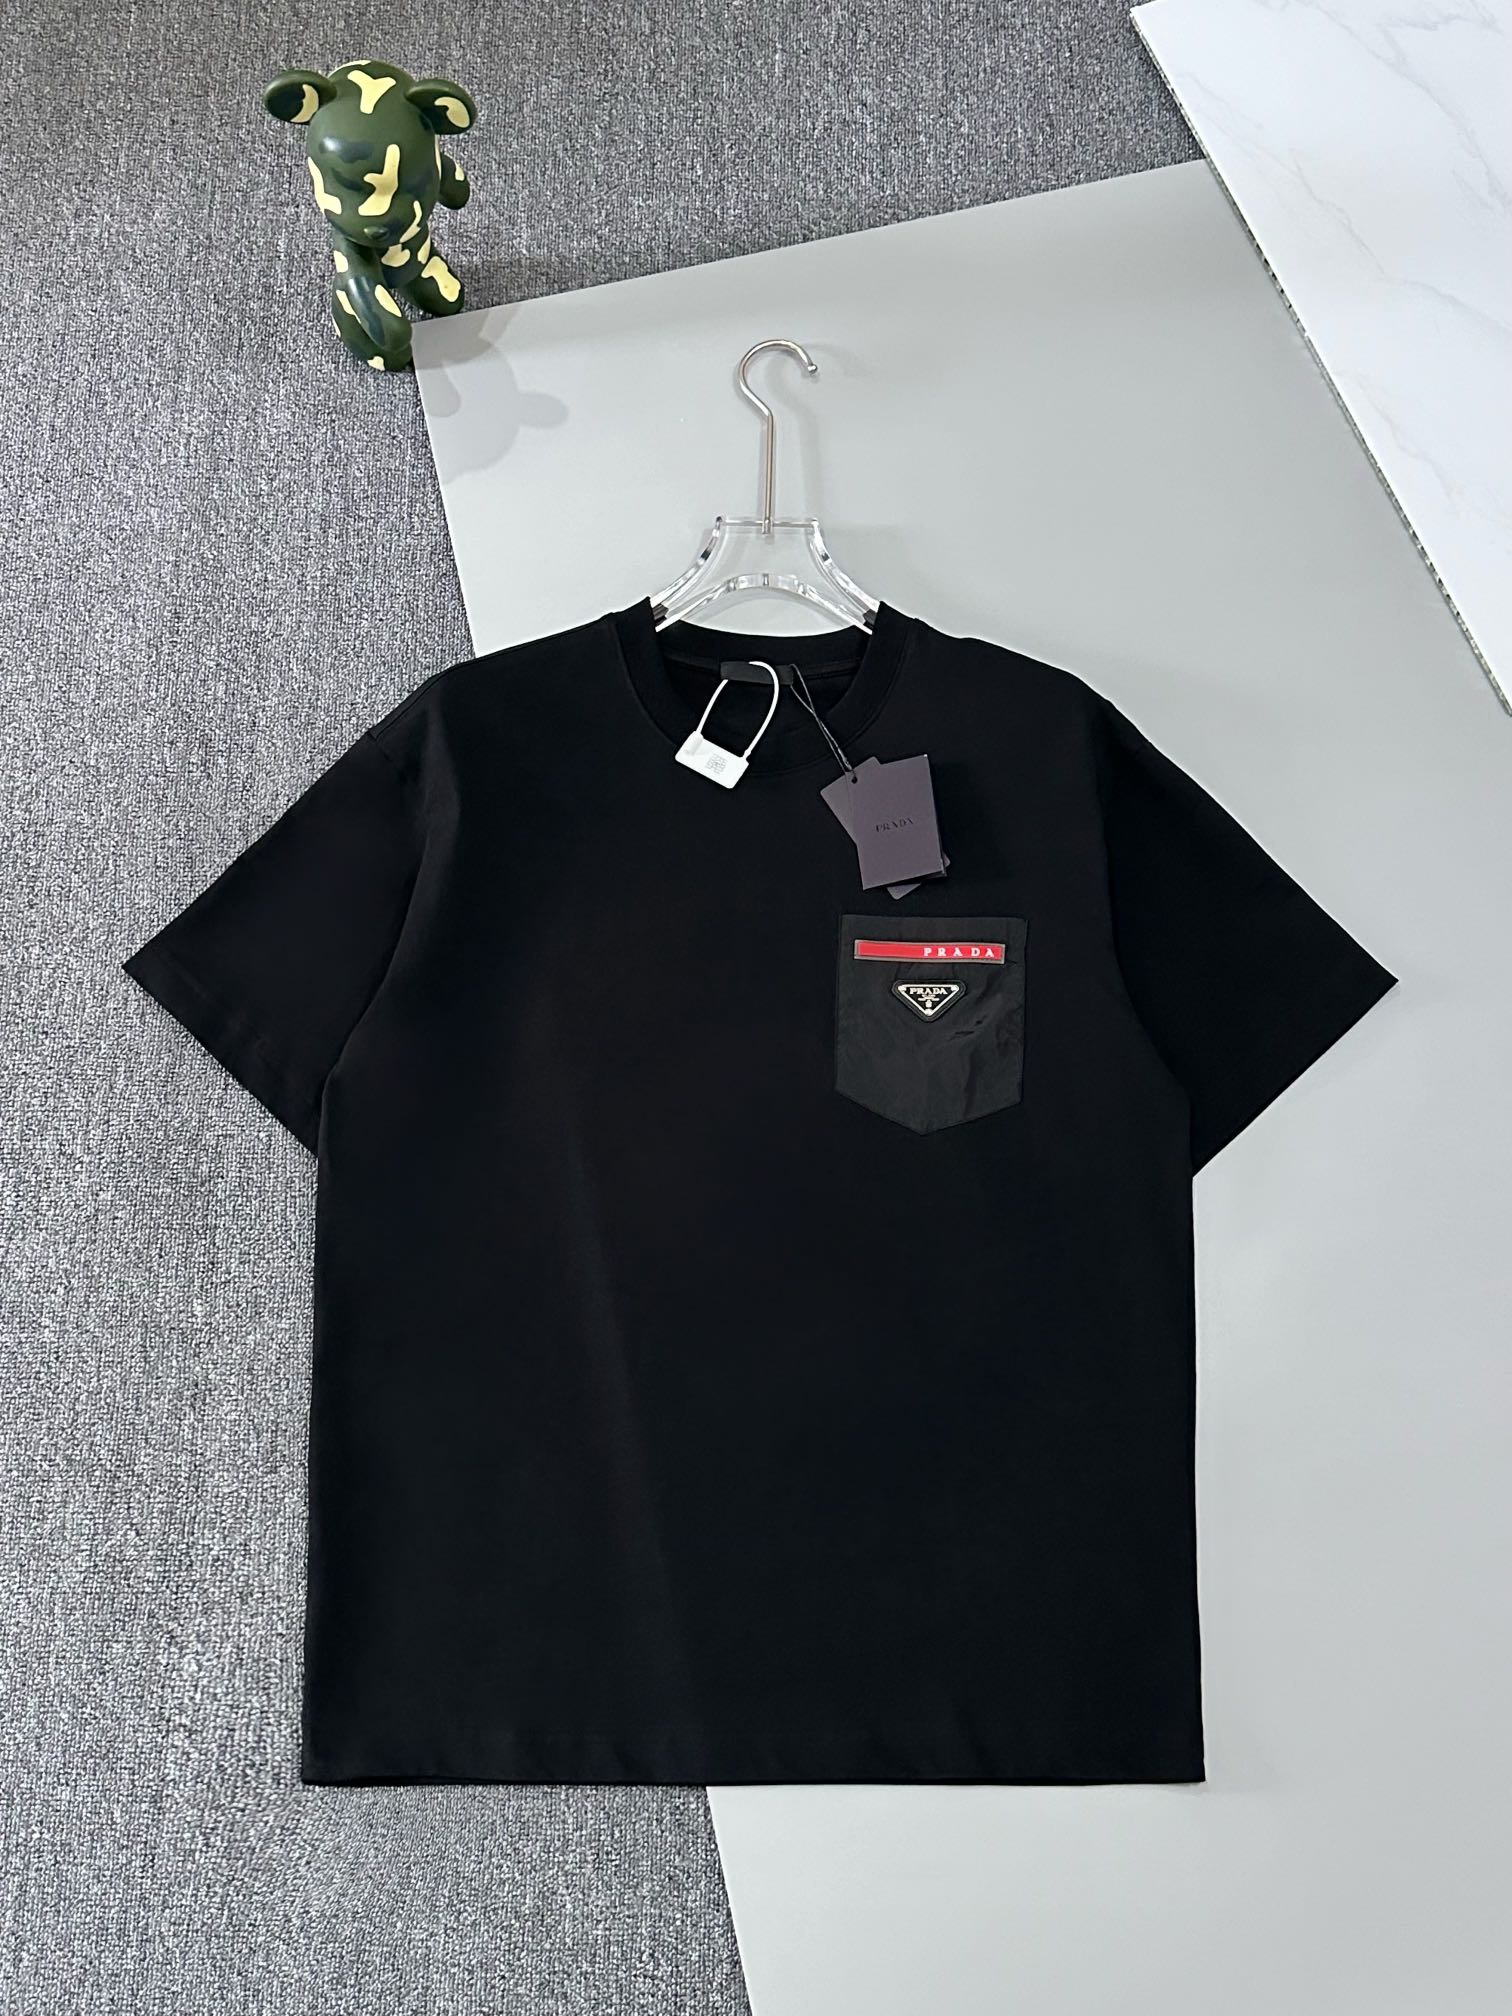 Prada Vêtements T-Shirt Noir Blanc Unisexe Coton Manches courtes